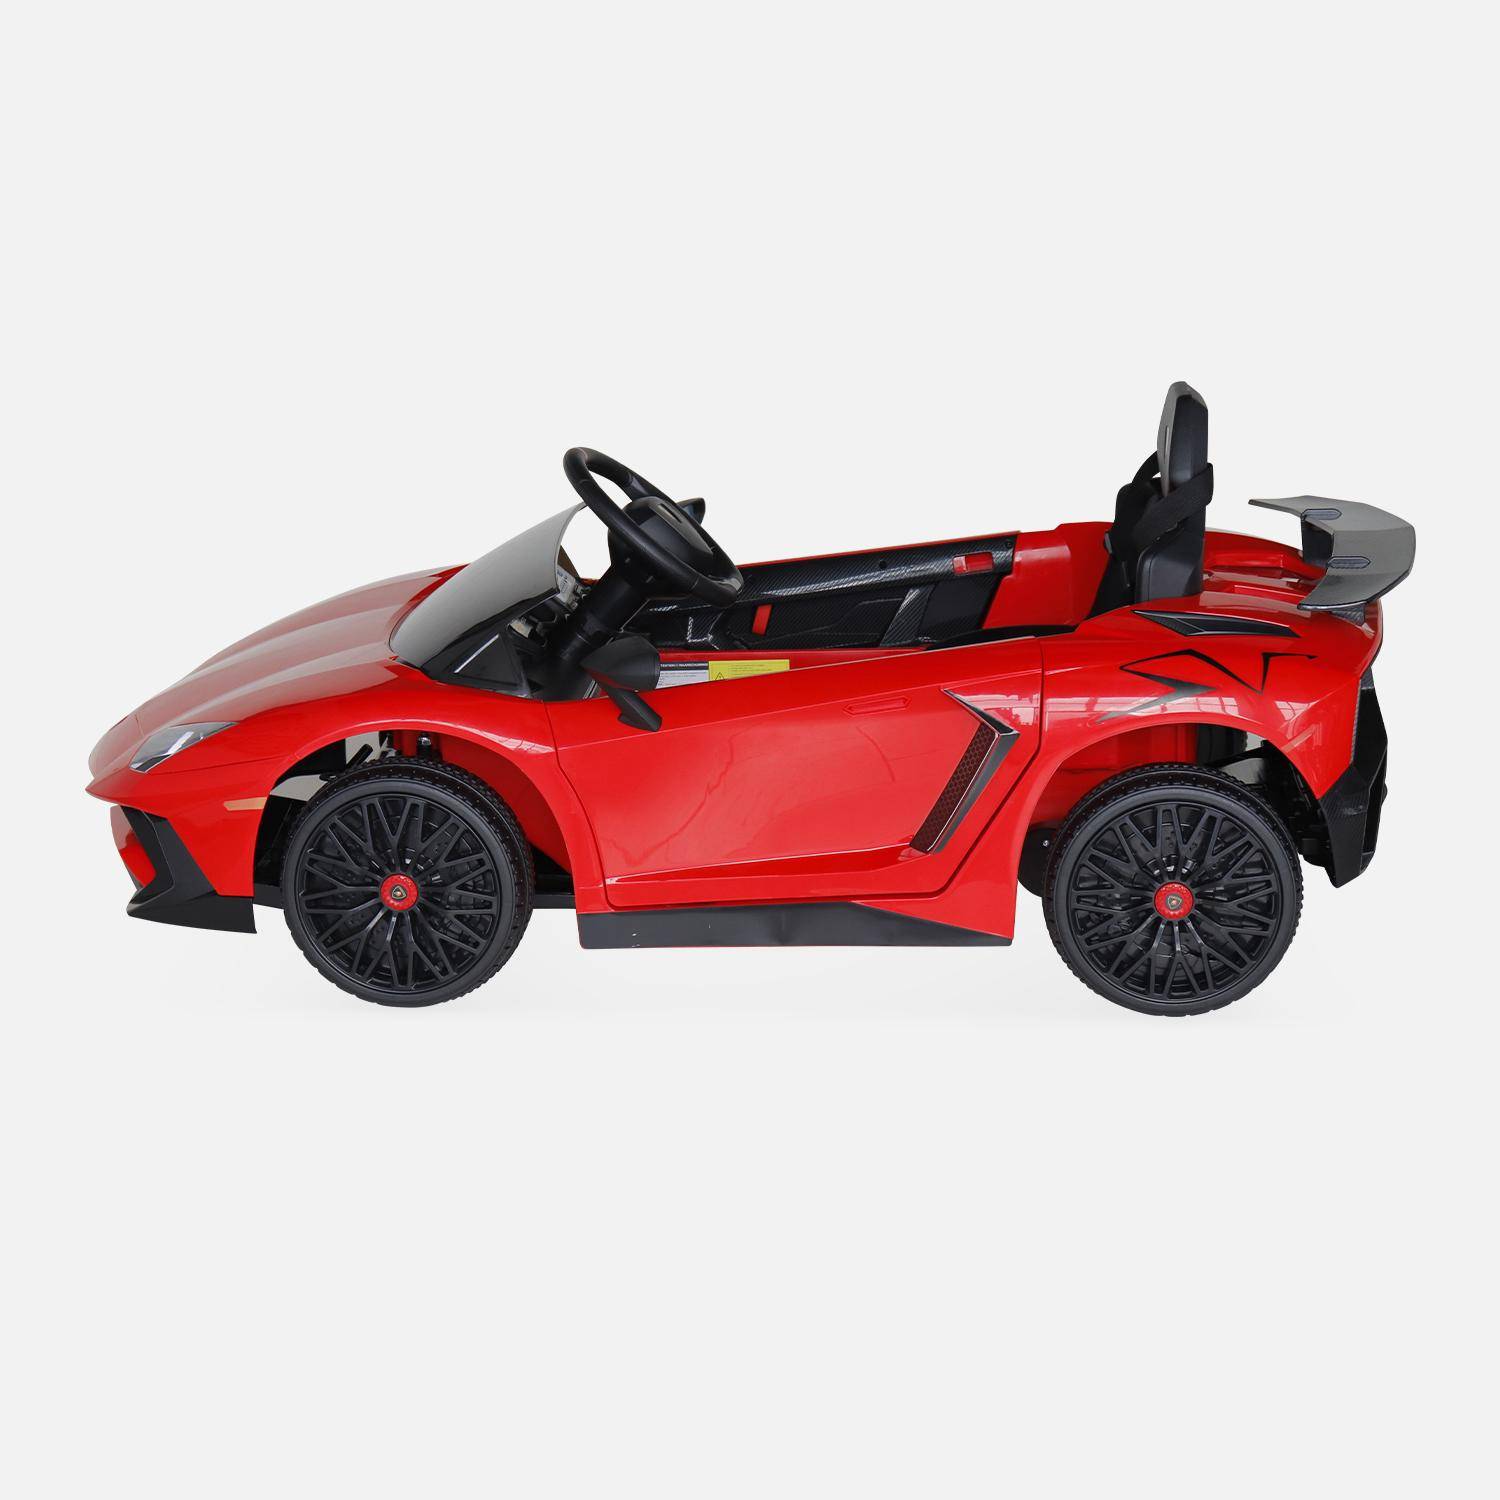 12V Lamborghini elektrische kinderauto, rood, 1 zitplaats, met autoradio, afstandsbediening, MP3, USB-poort en koplampen. Snelle levering, 2 jaar garantie.,sweeek,Photo4